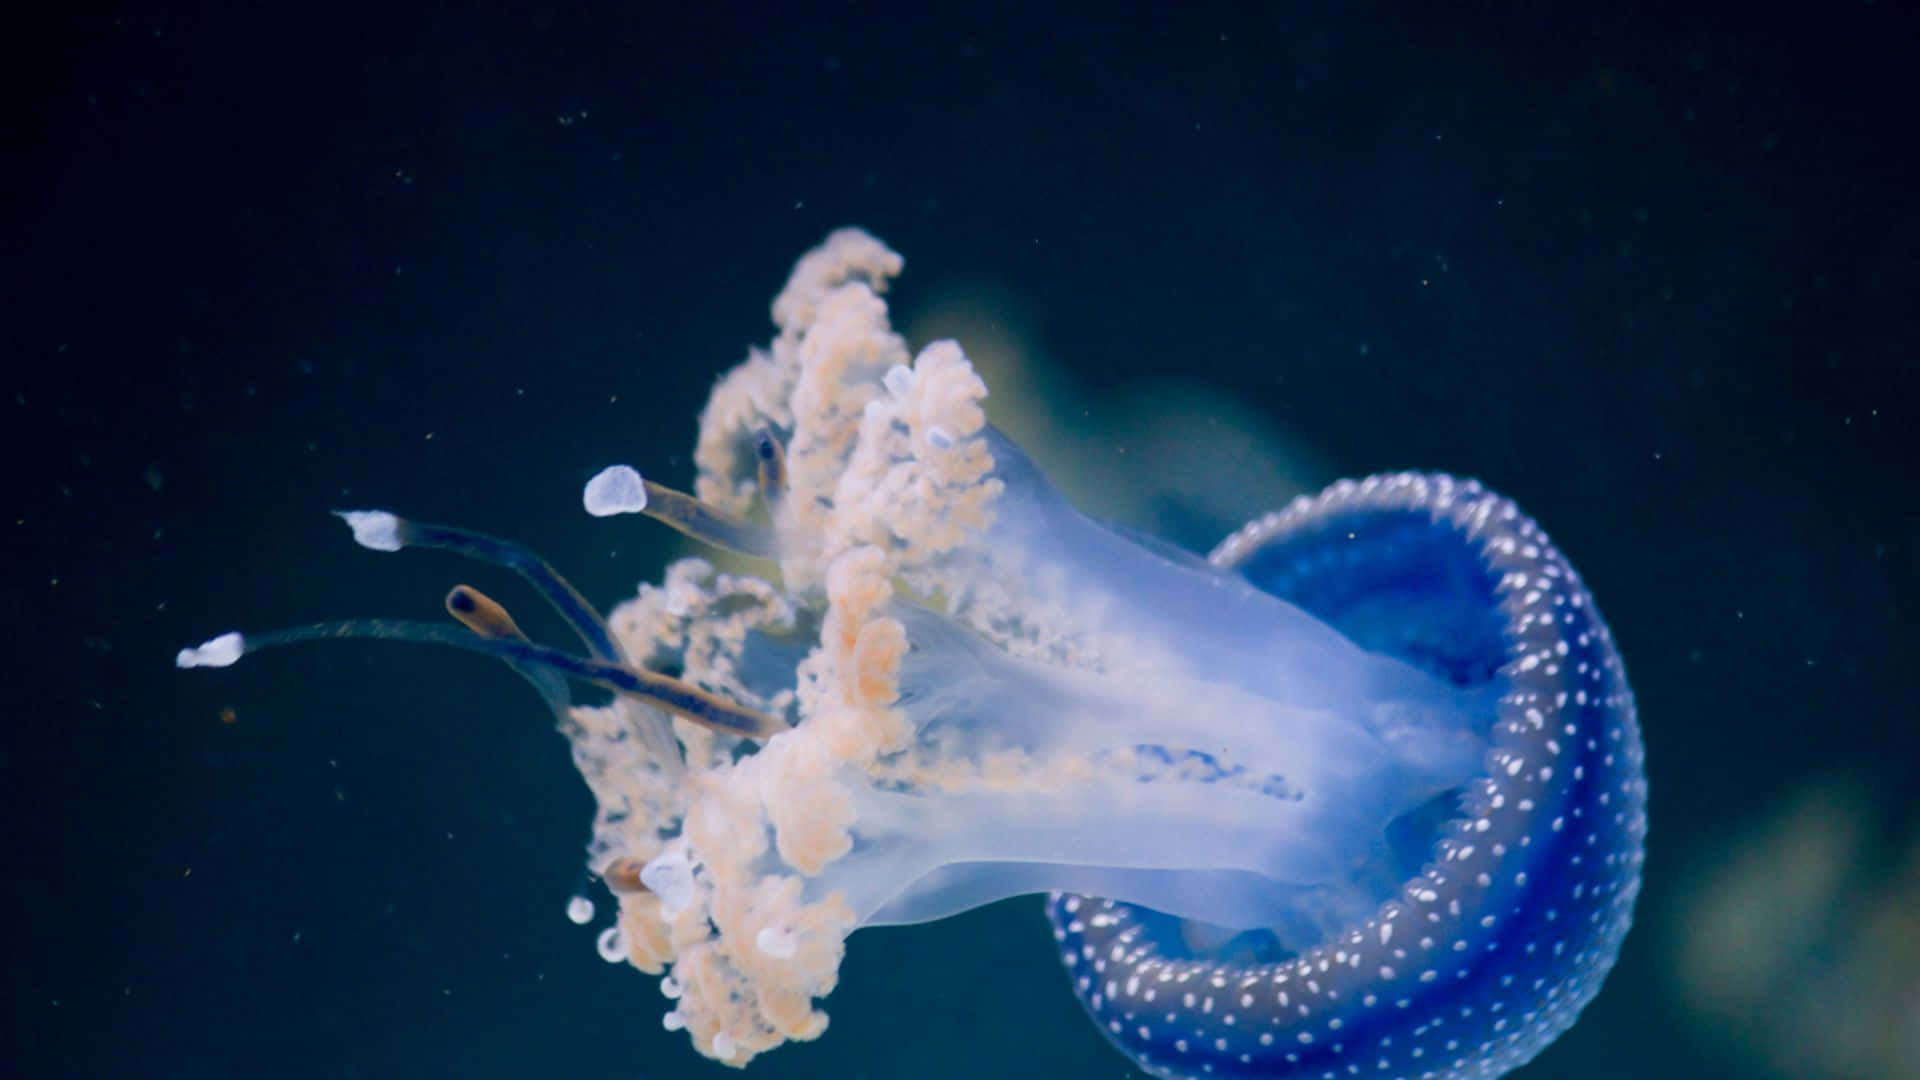 Jellyfishhintergrund